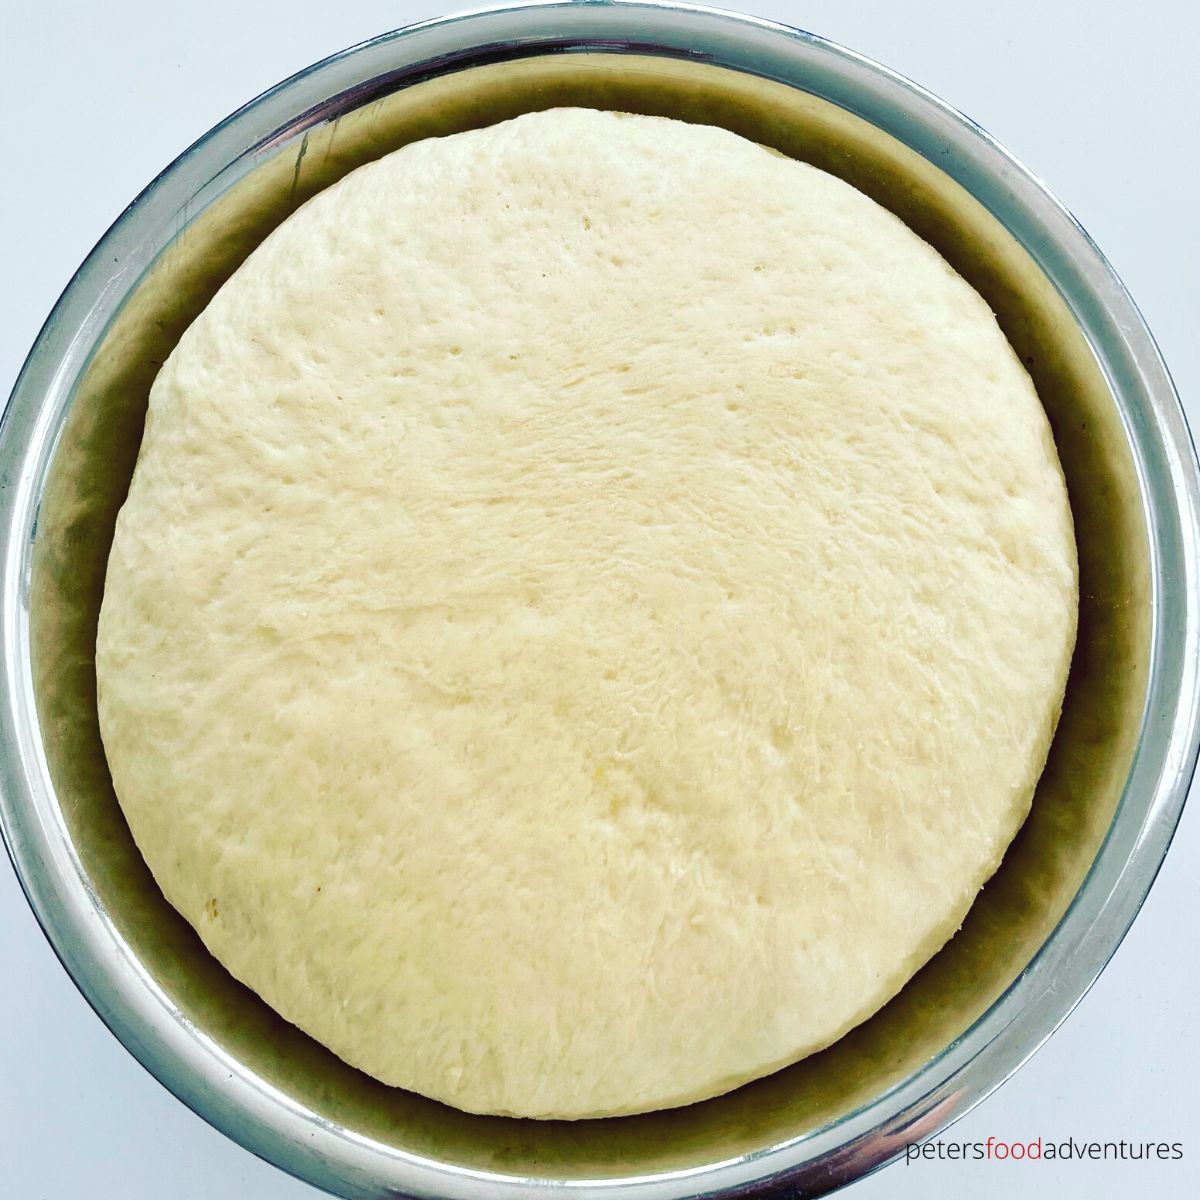 yeast dough rising